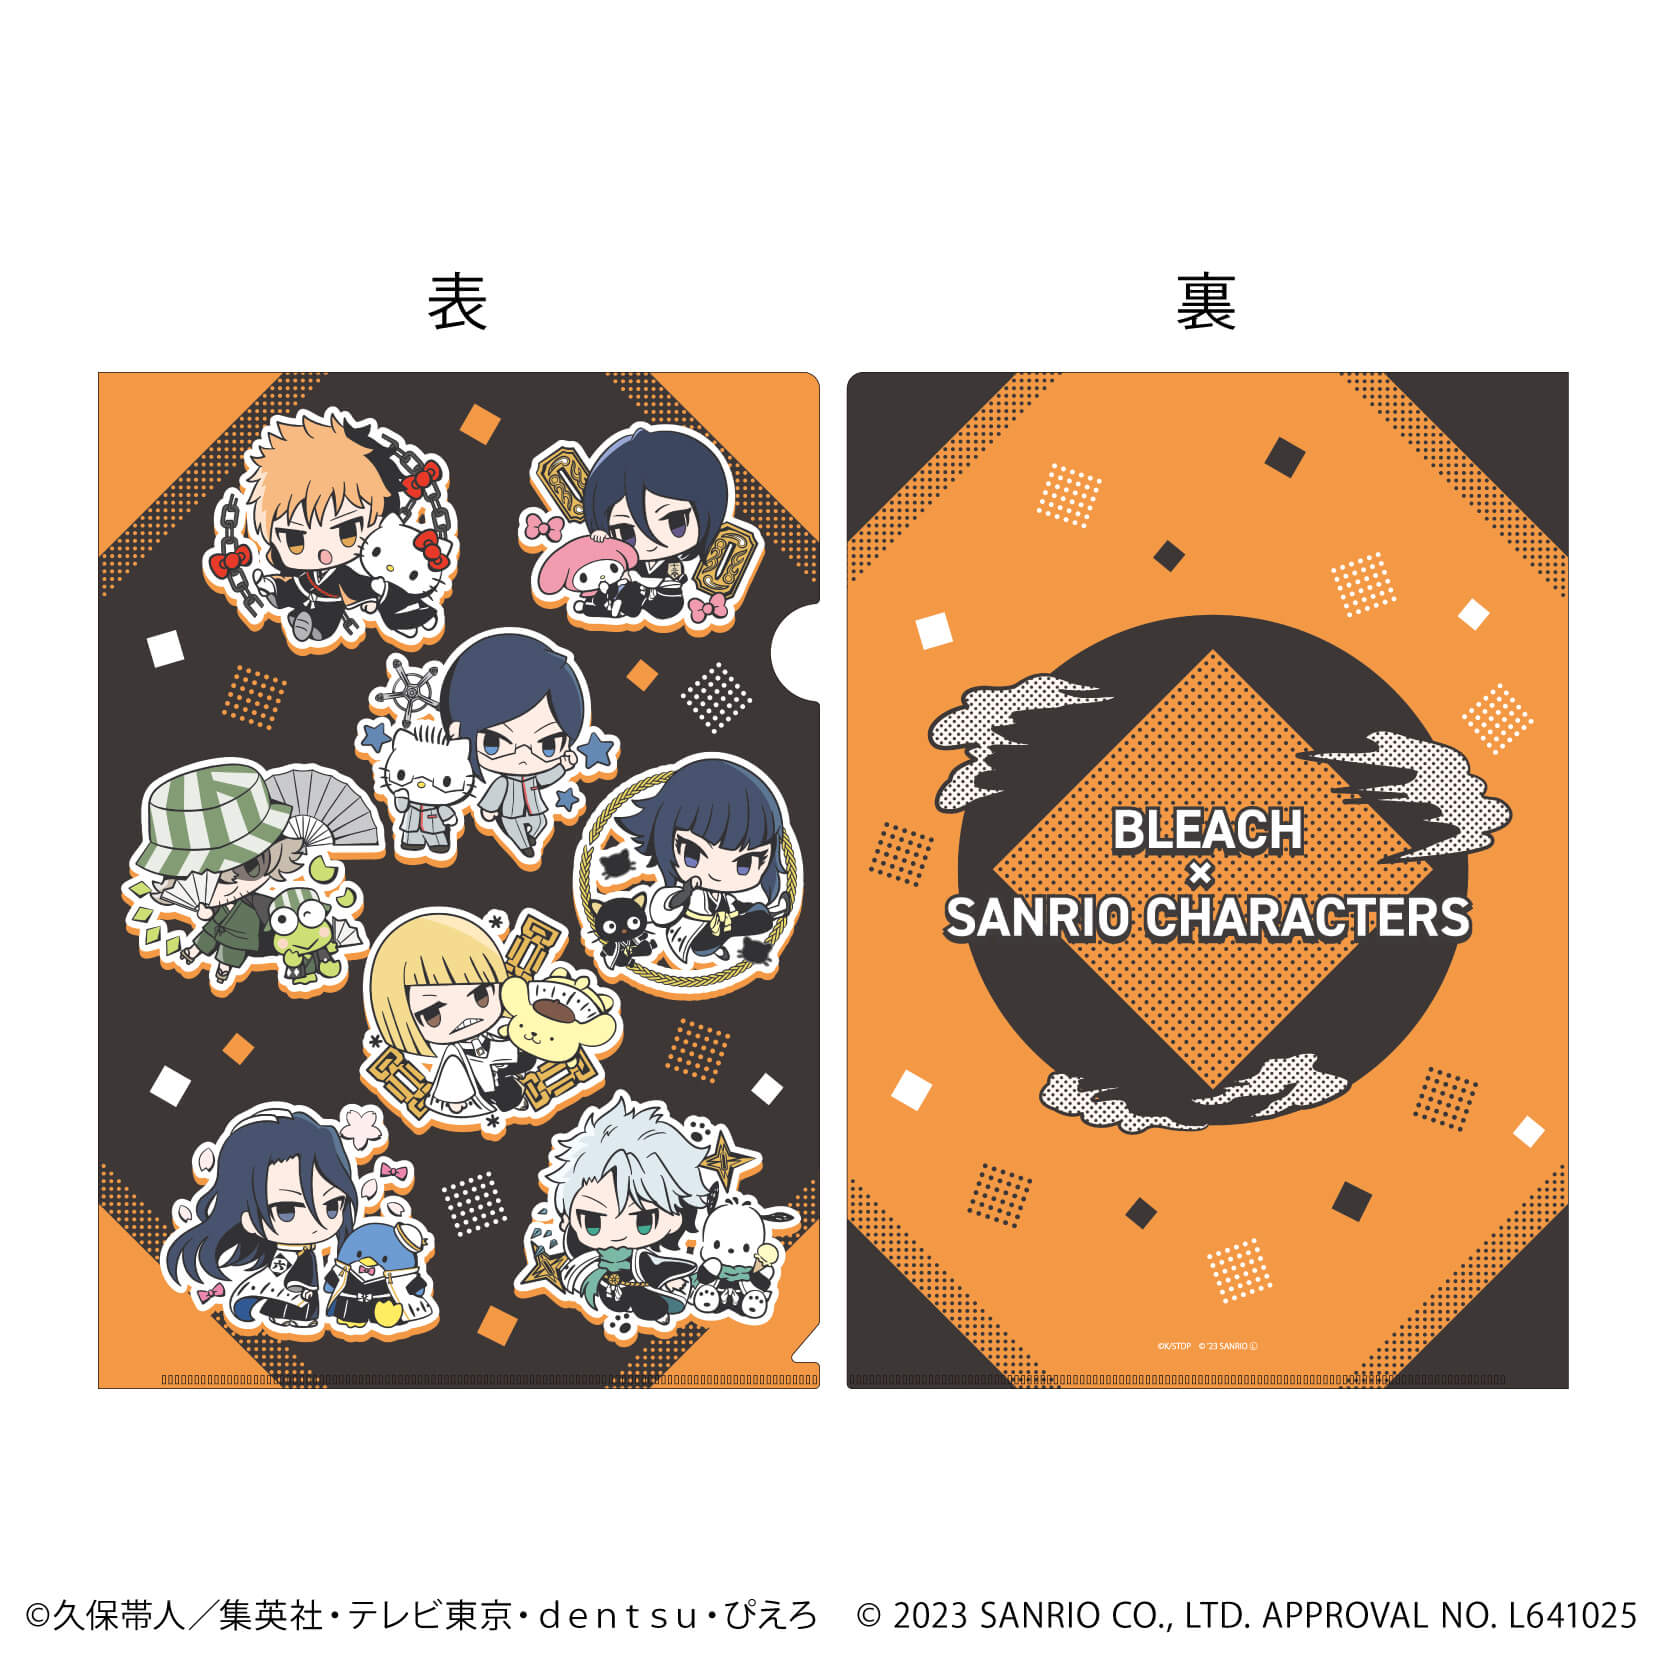 クリアファイル「BLEACH 千年血戦篇×サンリオキャラクターズ」01/集合デザイン(ミニキャライラスト)